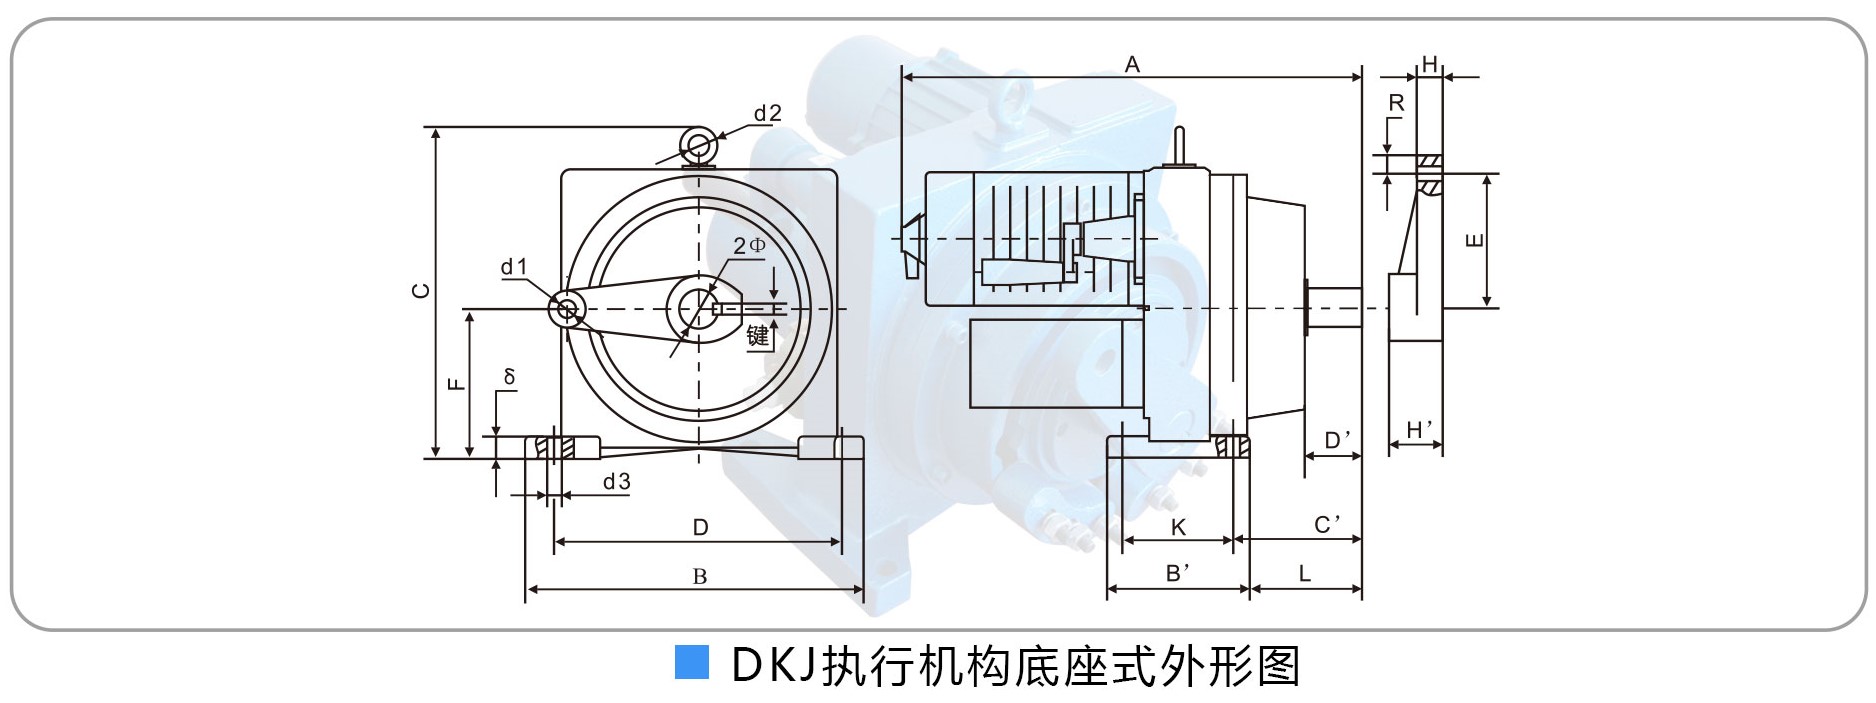 DKJ-3100 250Nm电动执行机构 电动执行机构,电动执行器,DKJ-3100,球阀电动执行机构,蝶阀电动执行机构